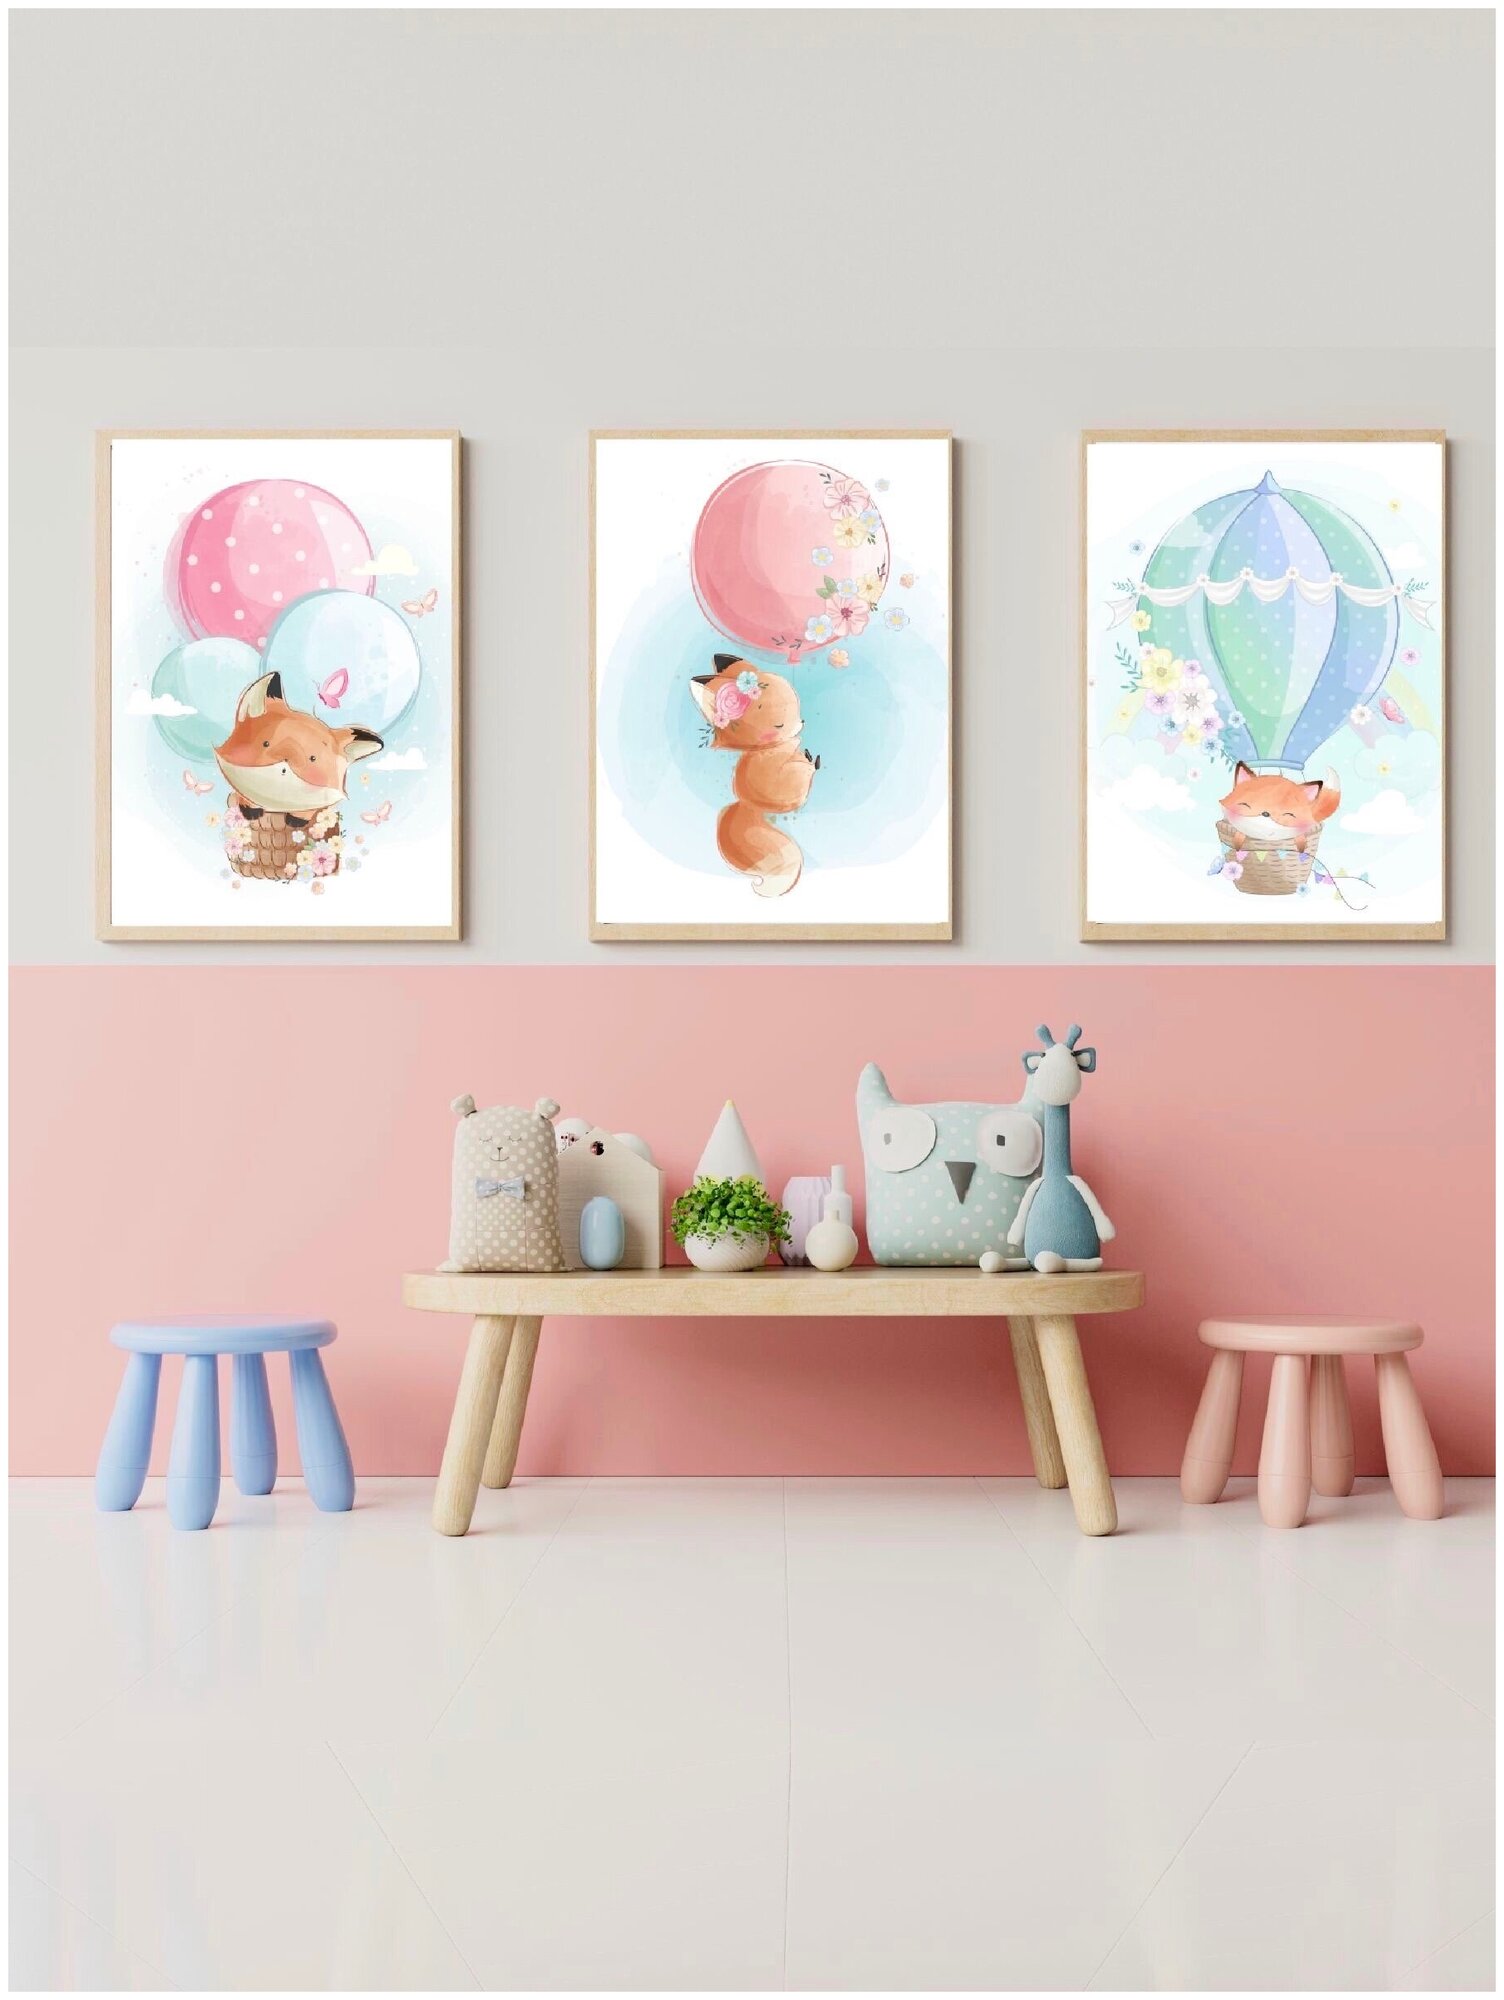 Постеры плакаты на стену детские 30/40 см постеры для девочки дочери для детей постеры картины с животными лисичками лисой декор в детскую комнату